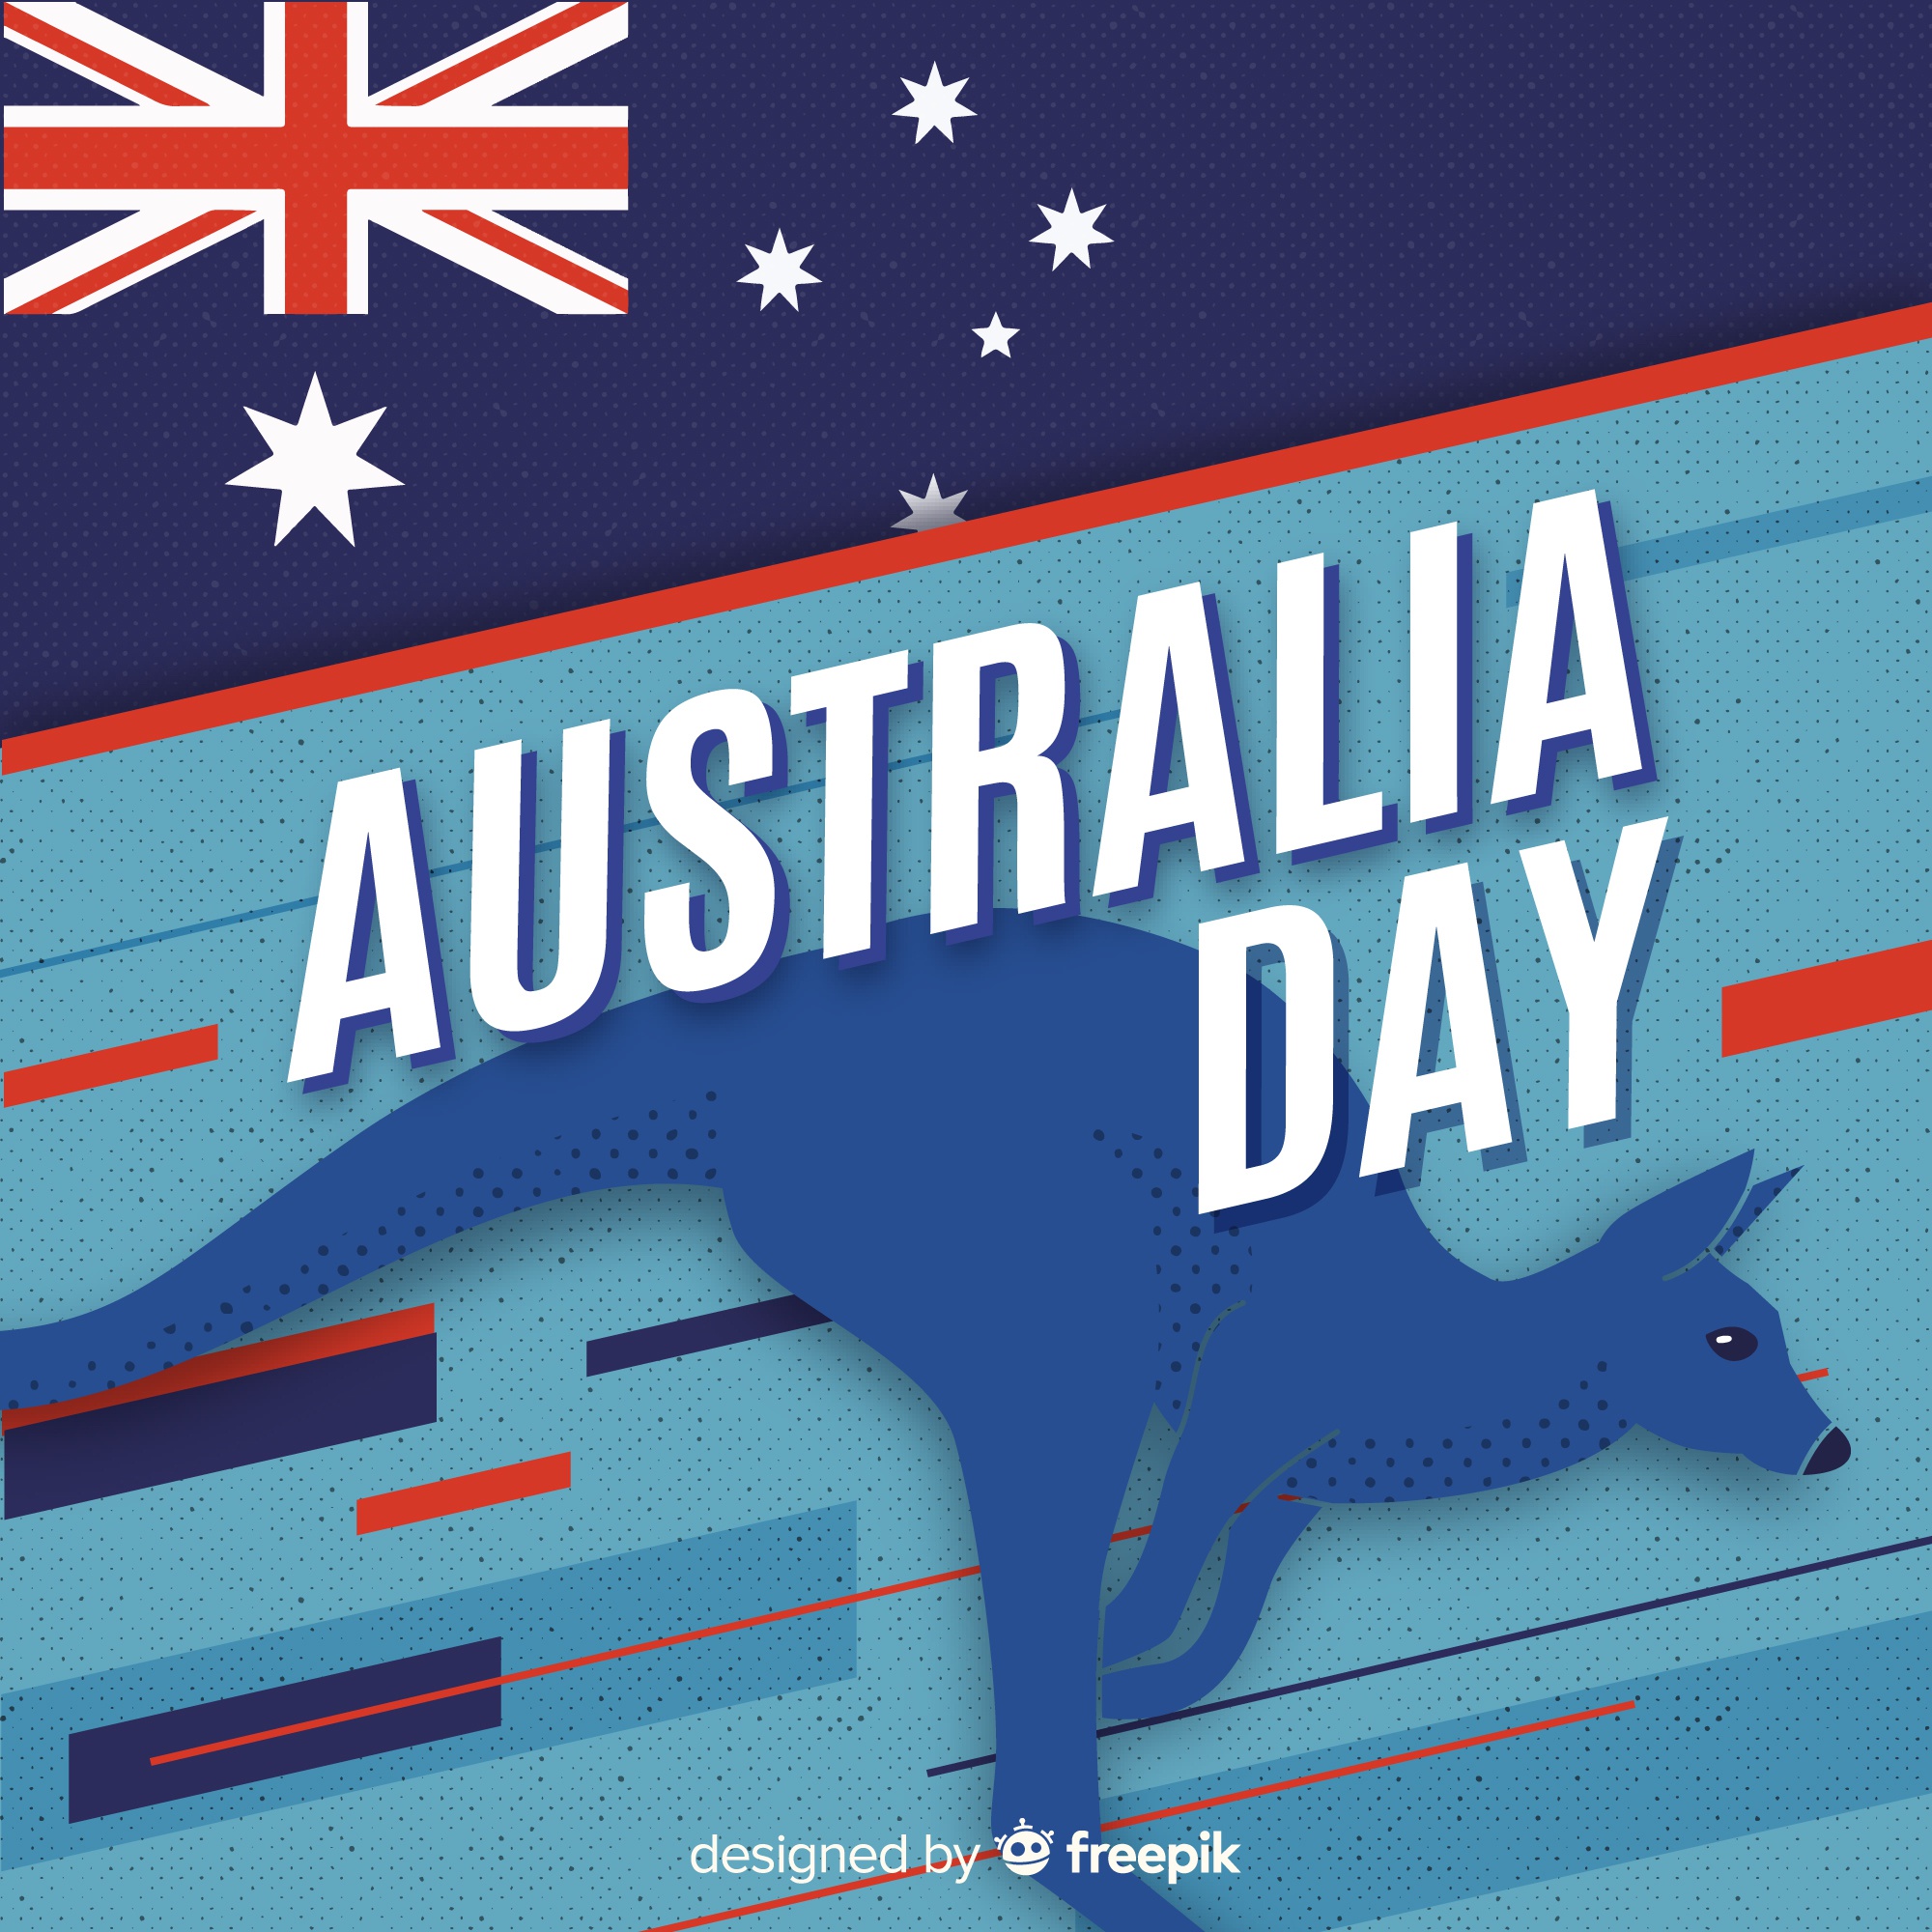 Плоский австралийский день фон